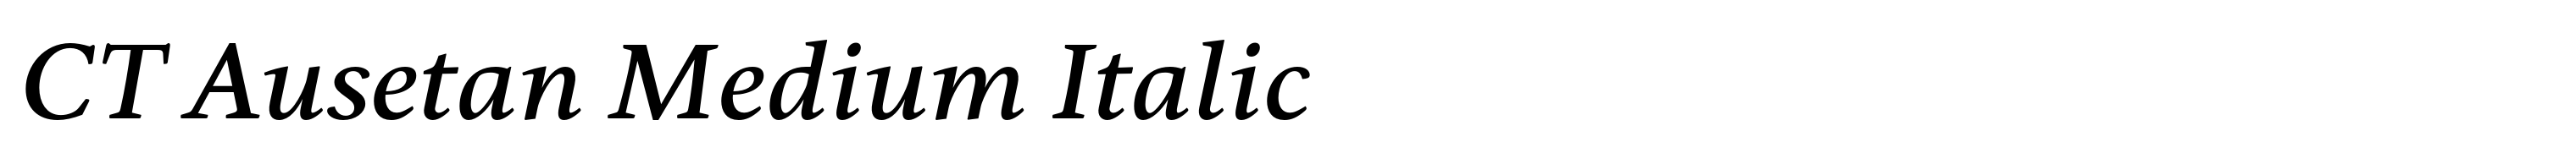 CT Ausetan Medium Italic